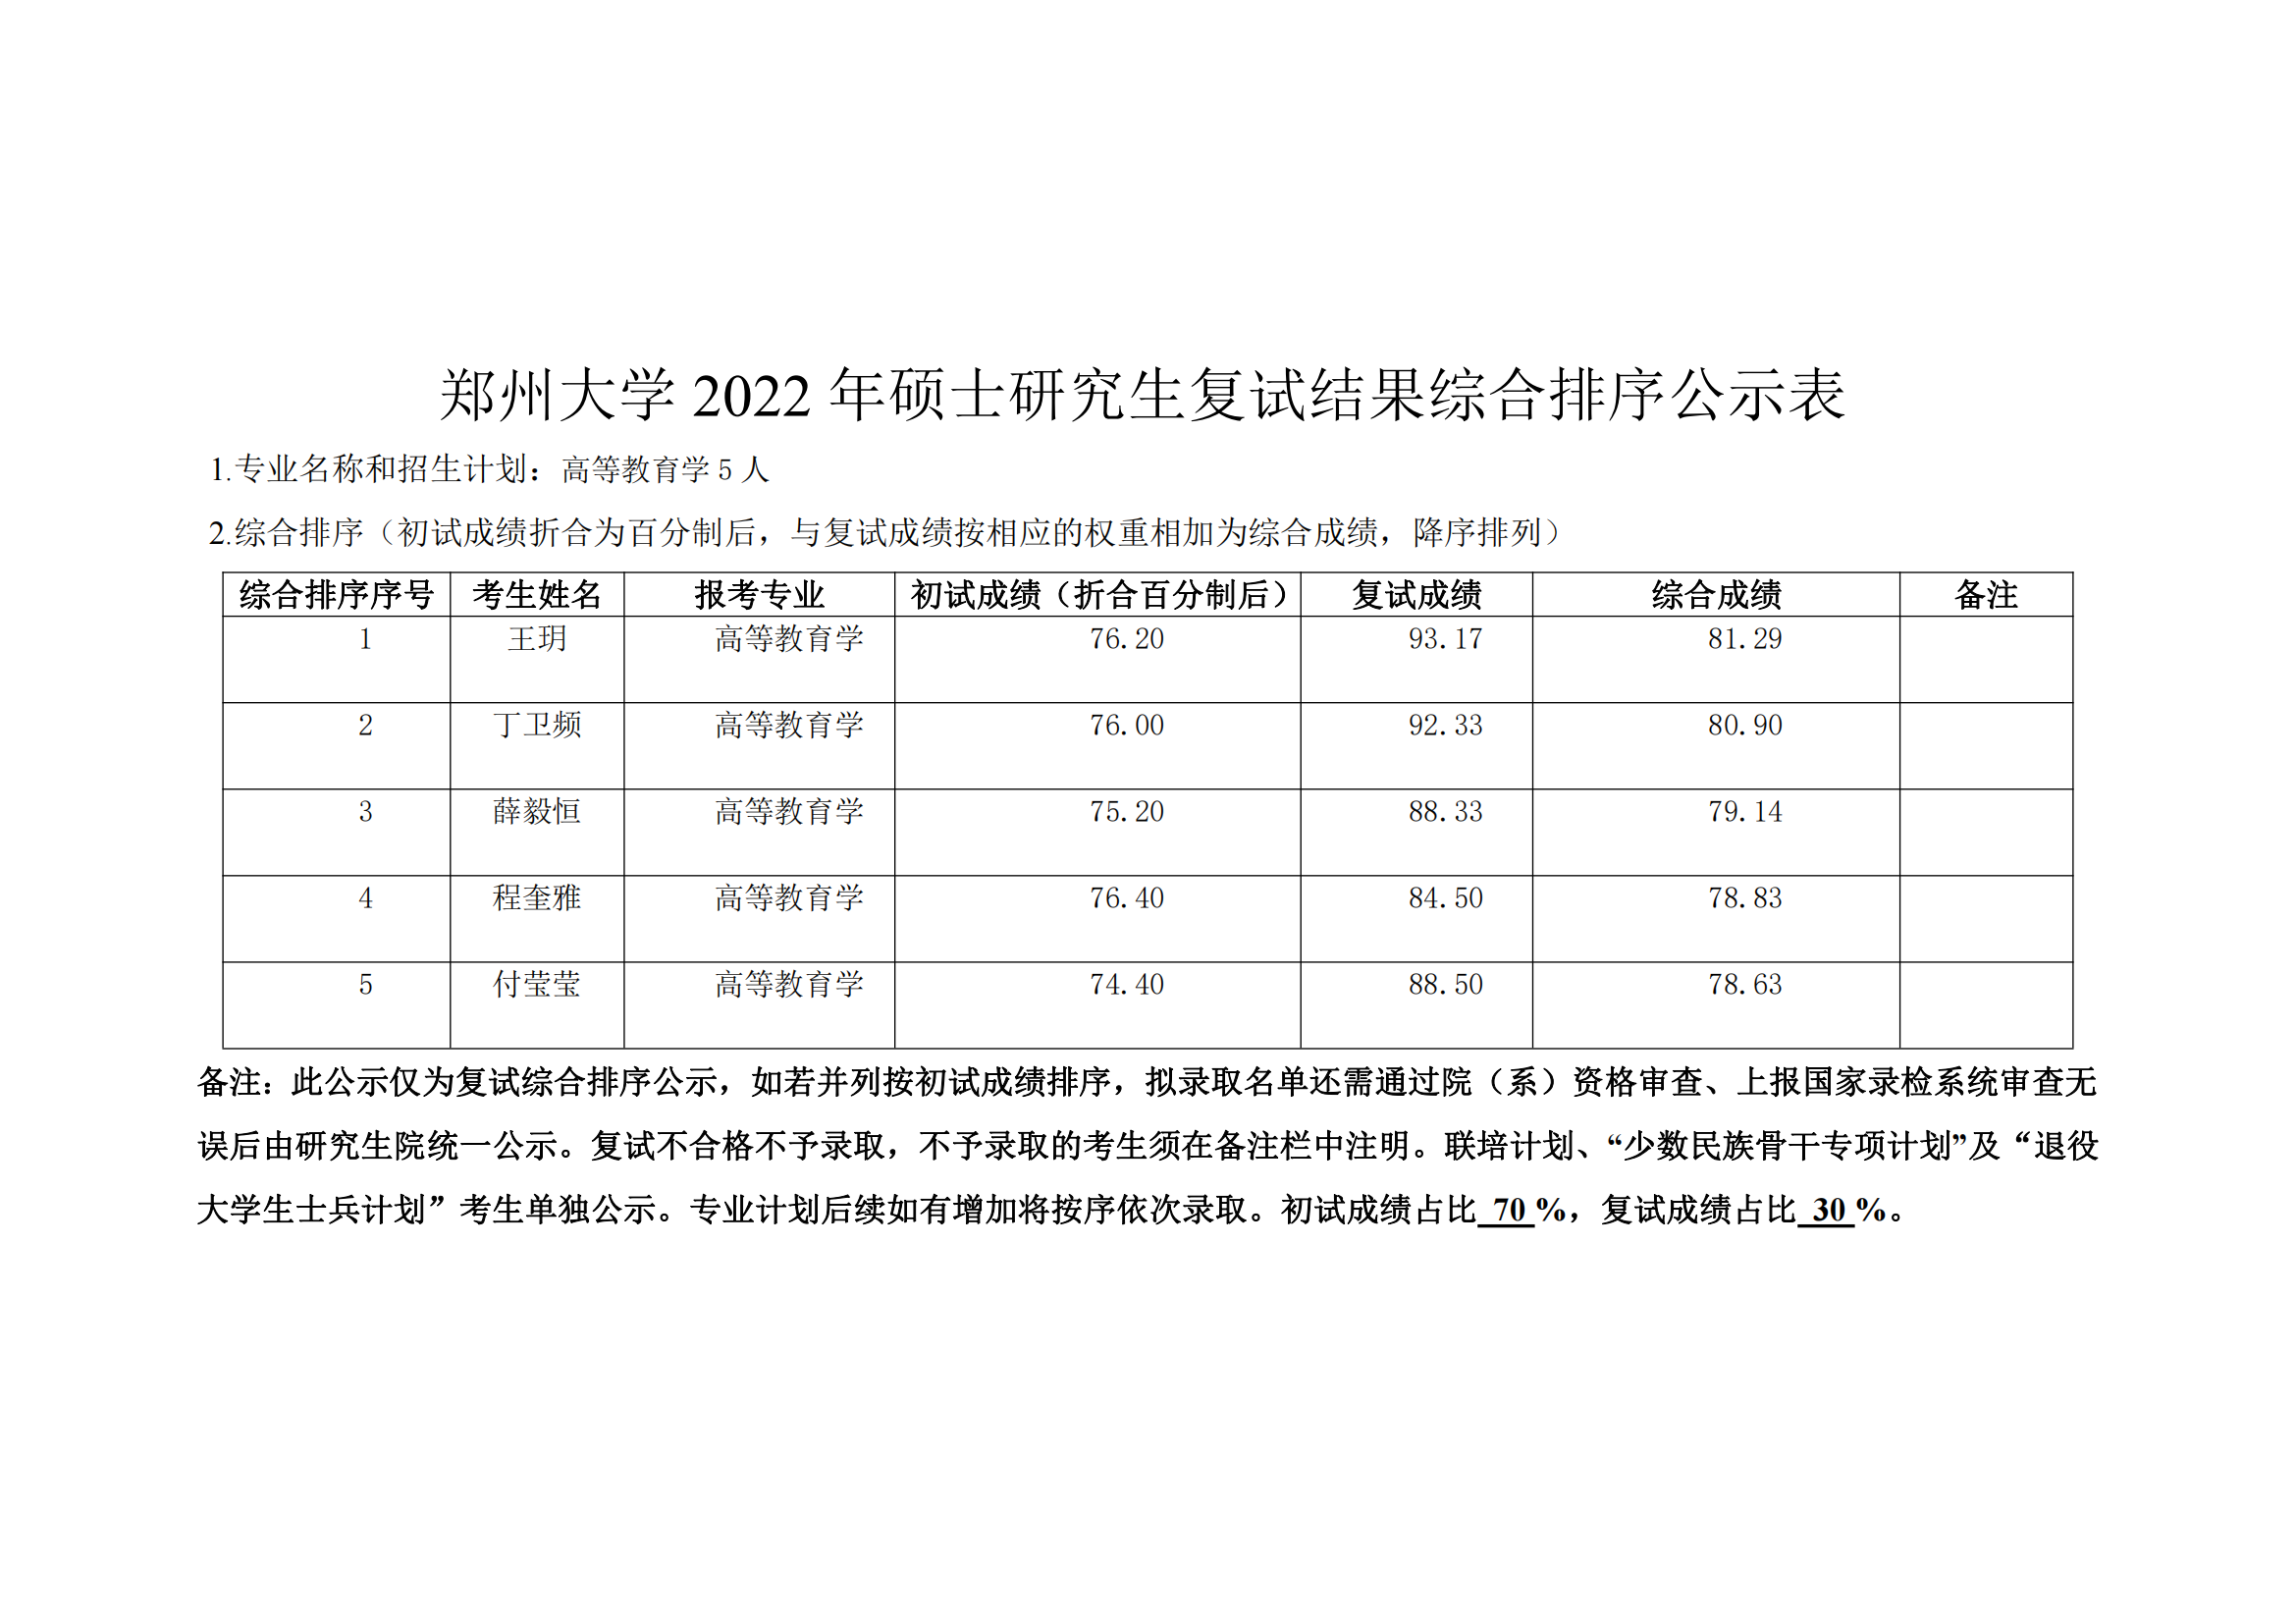 郑州大学教育学院2022年硕士研究生复试结果综合排序公示表_05.png